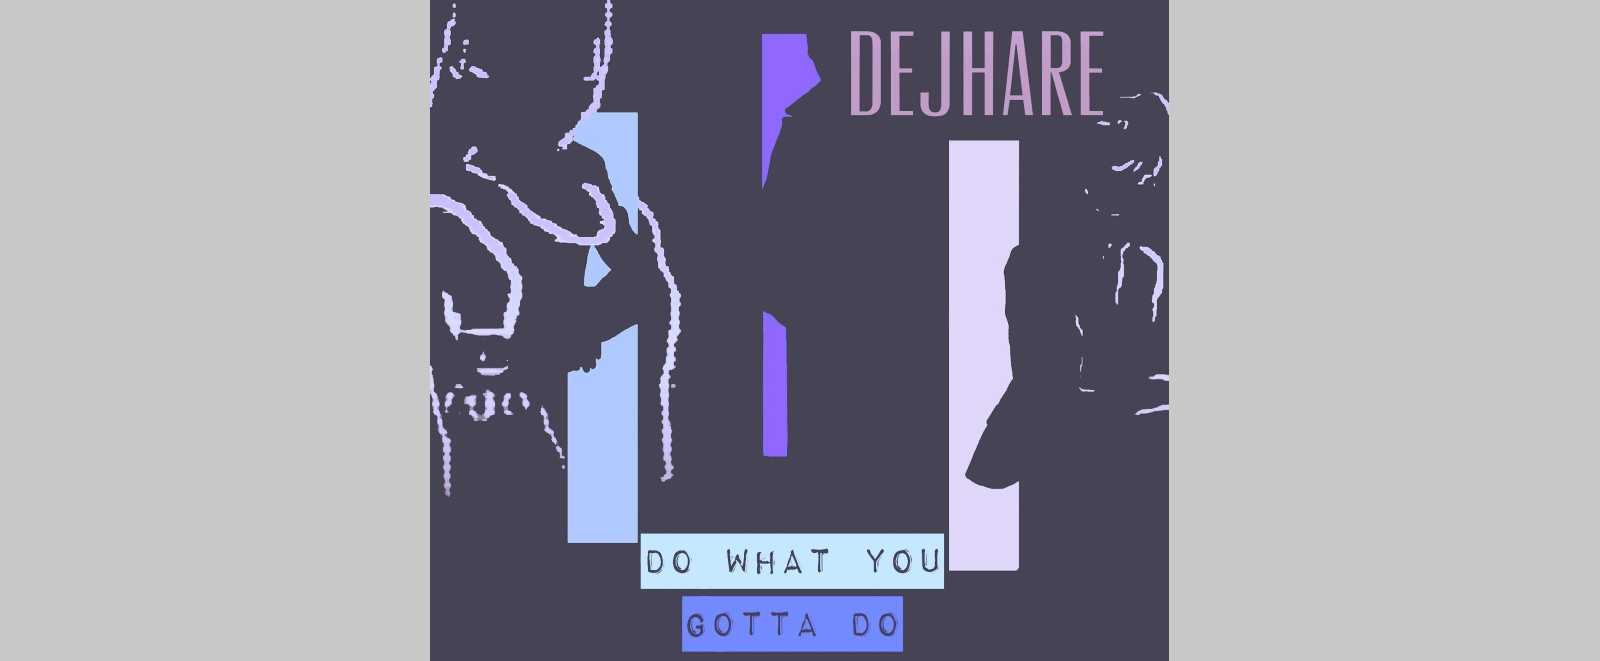 Stream Dejhare’s Dance-EDM Single “Do What You Gotta Do”